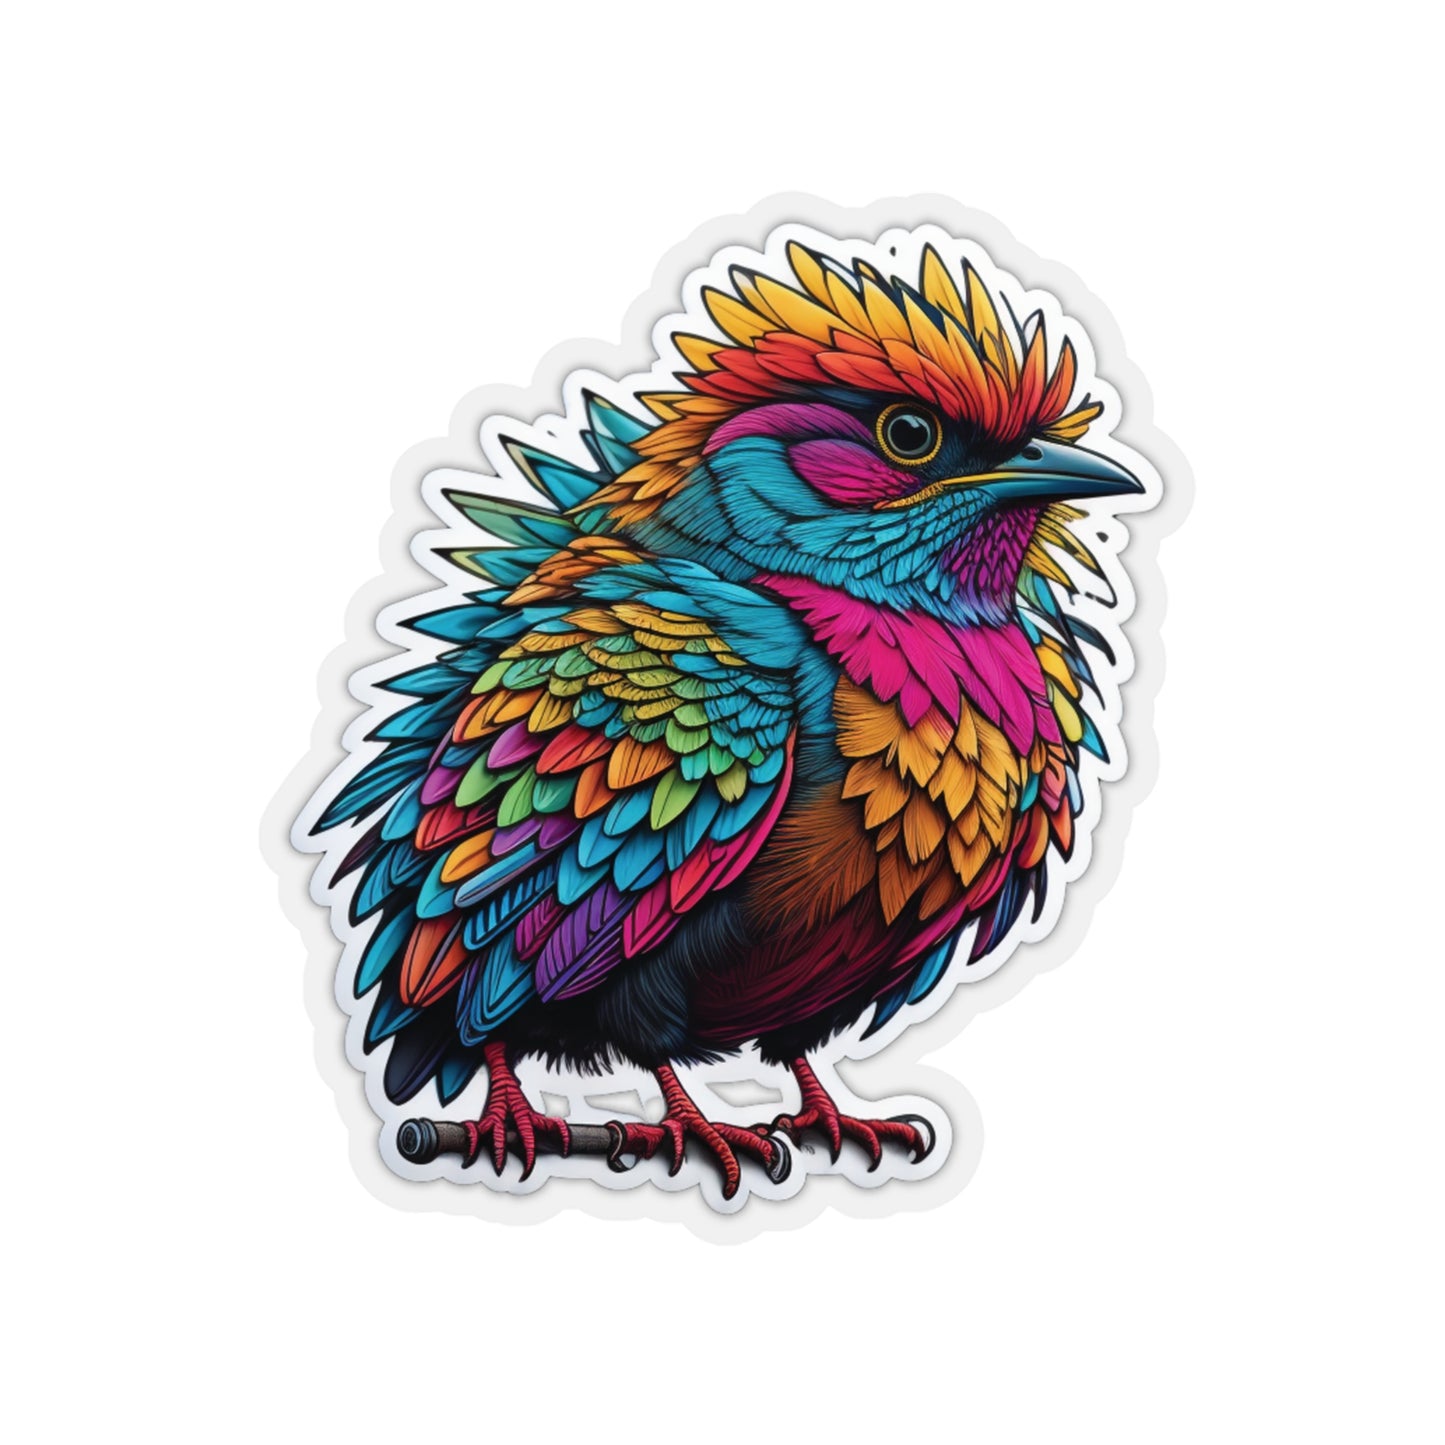 Cute Bird Sticker Bright Colors | Fun Stickers | Happy Stickers | Must Have Stickers | Laptop Stickers | Best Stickers | Gift Idea